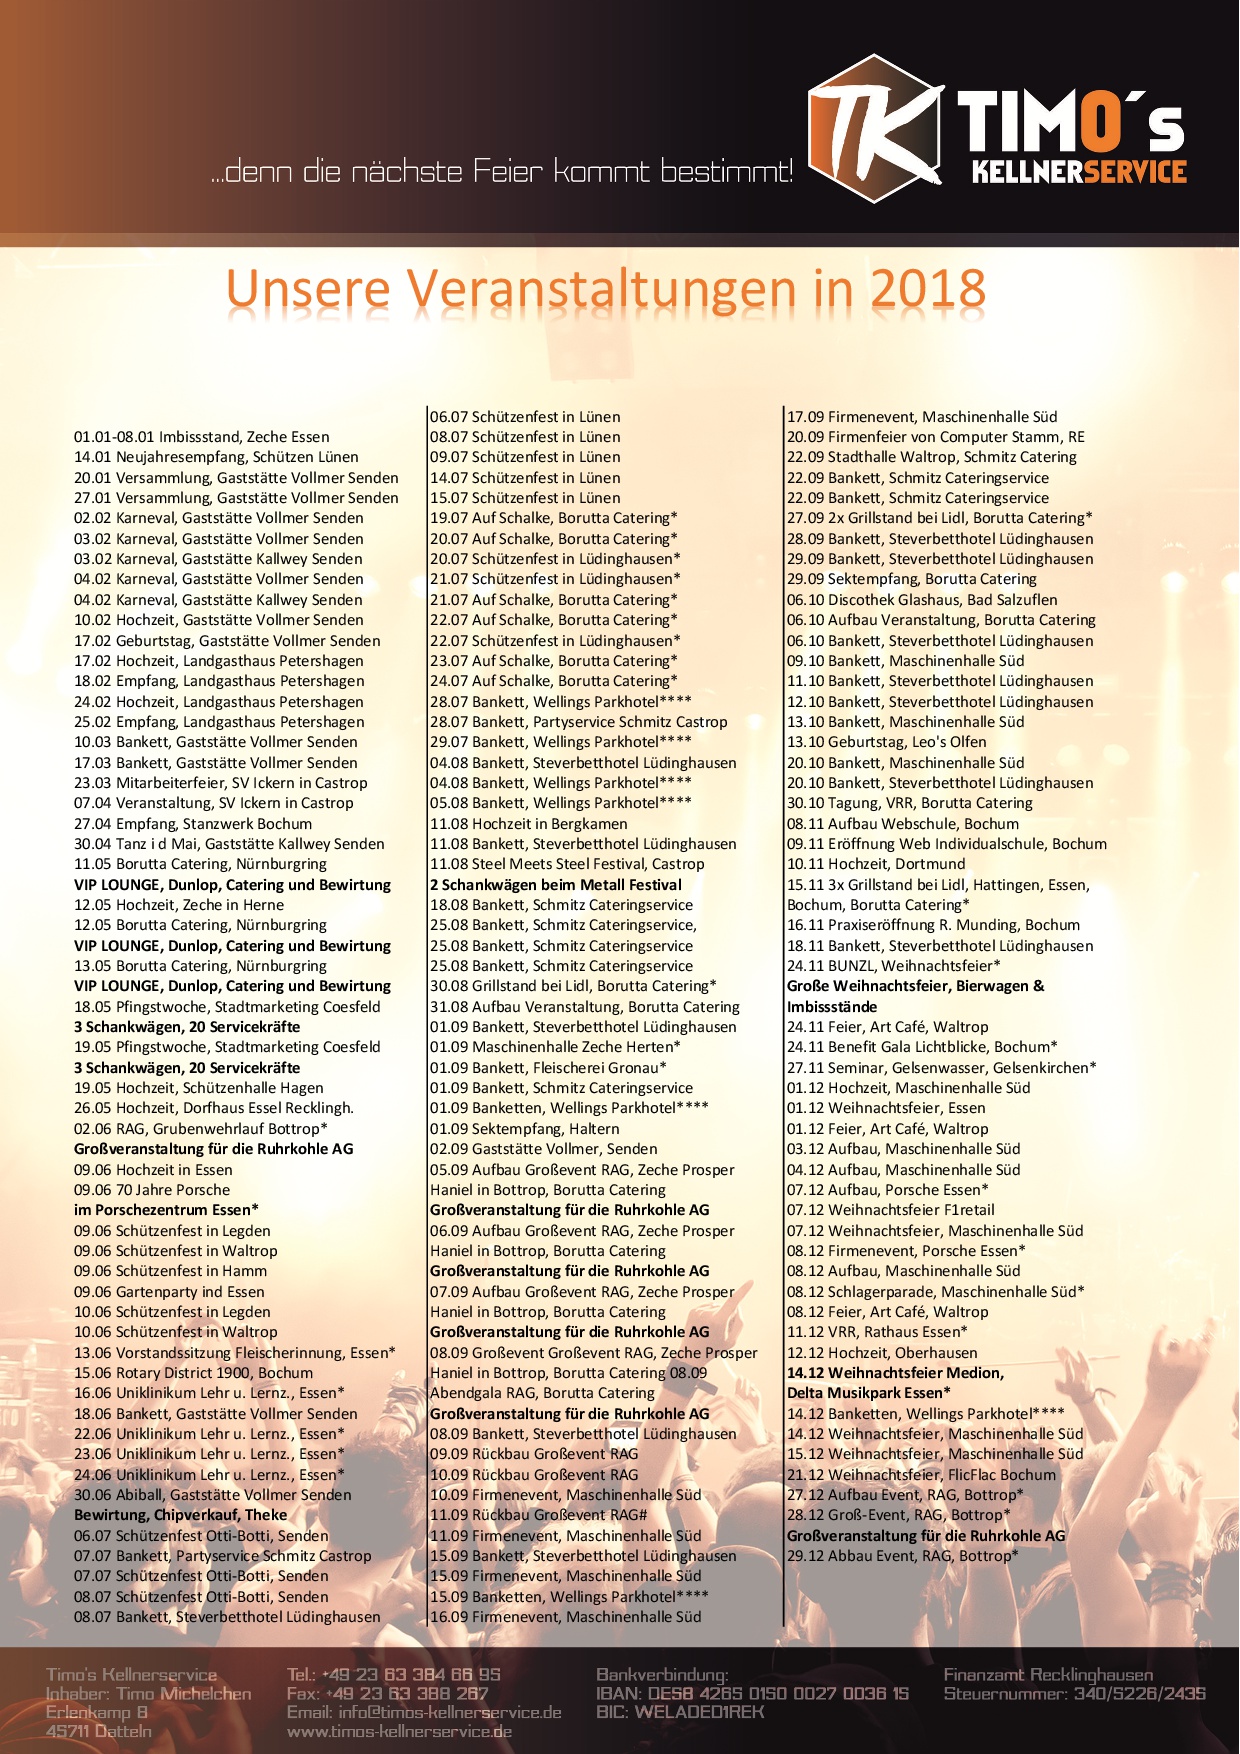 Veranstaltungen in 2018